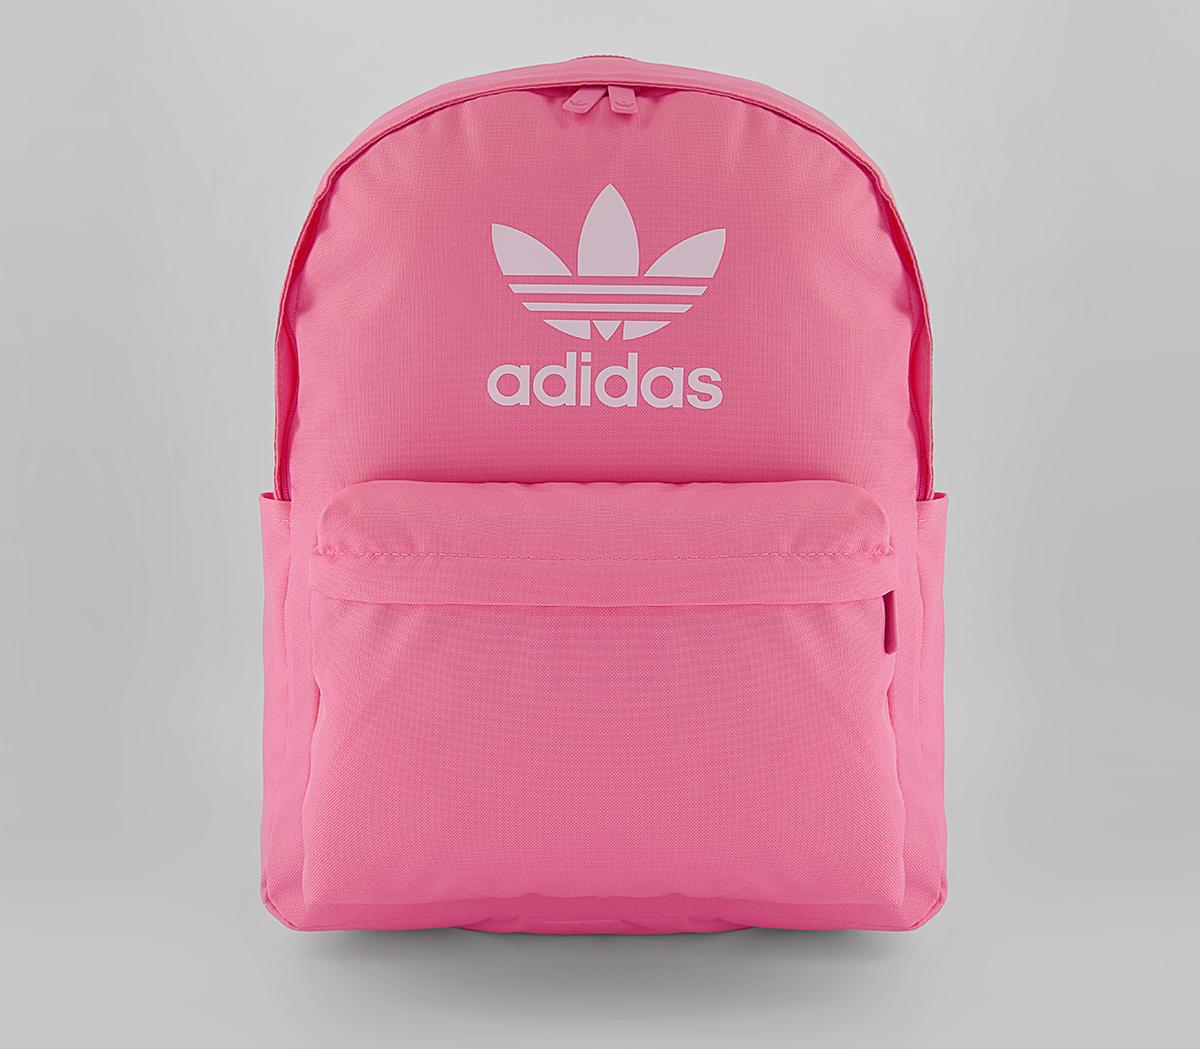 adidasAdicolor BackpackPink